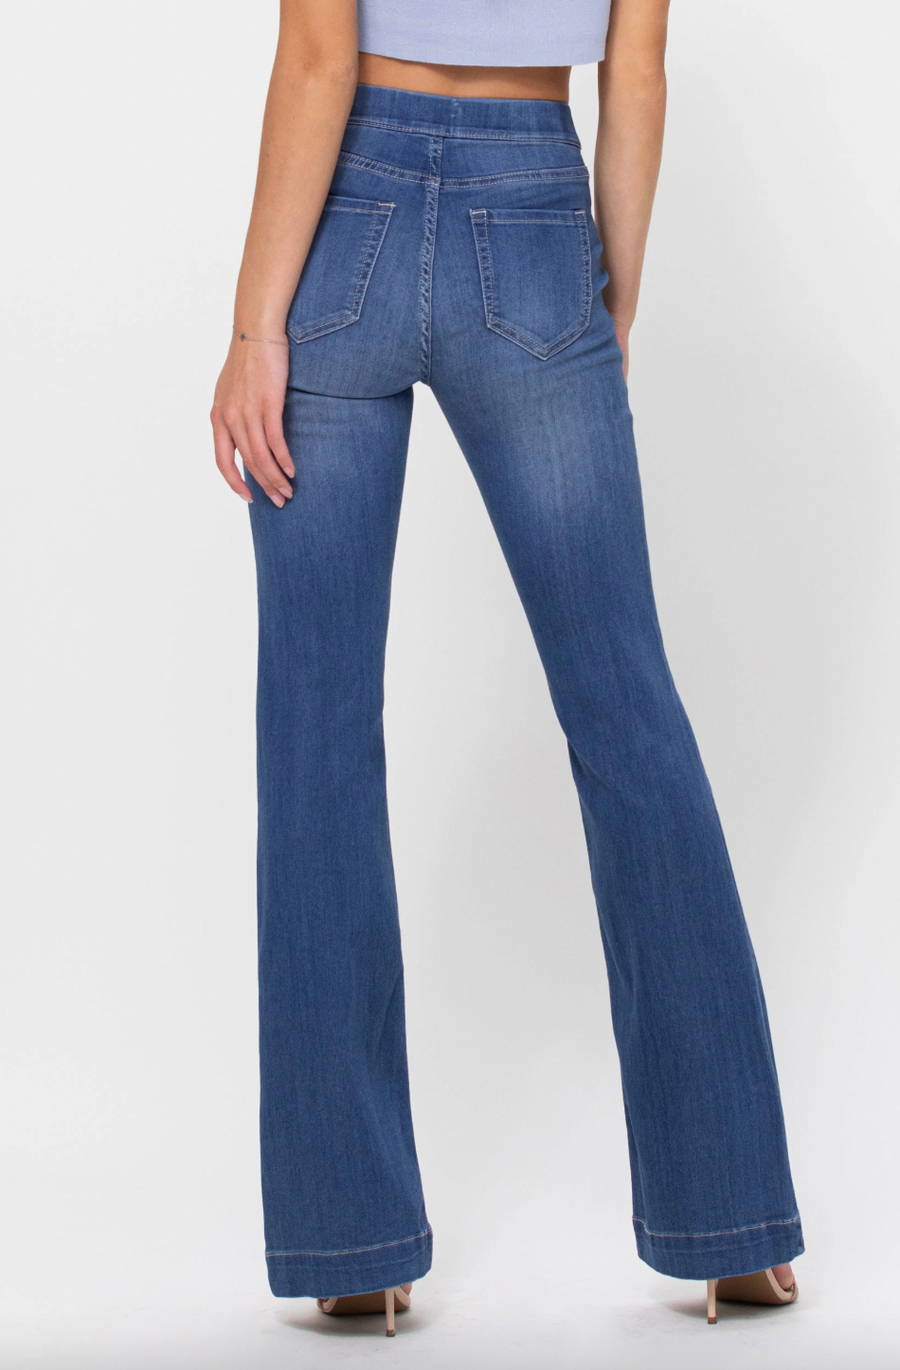 Paige 70's Denim Jeans